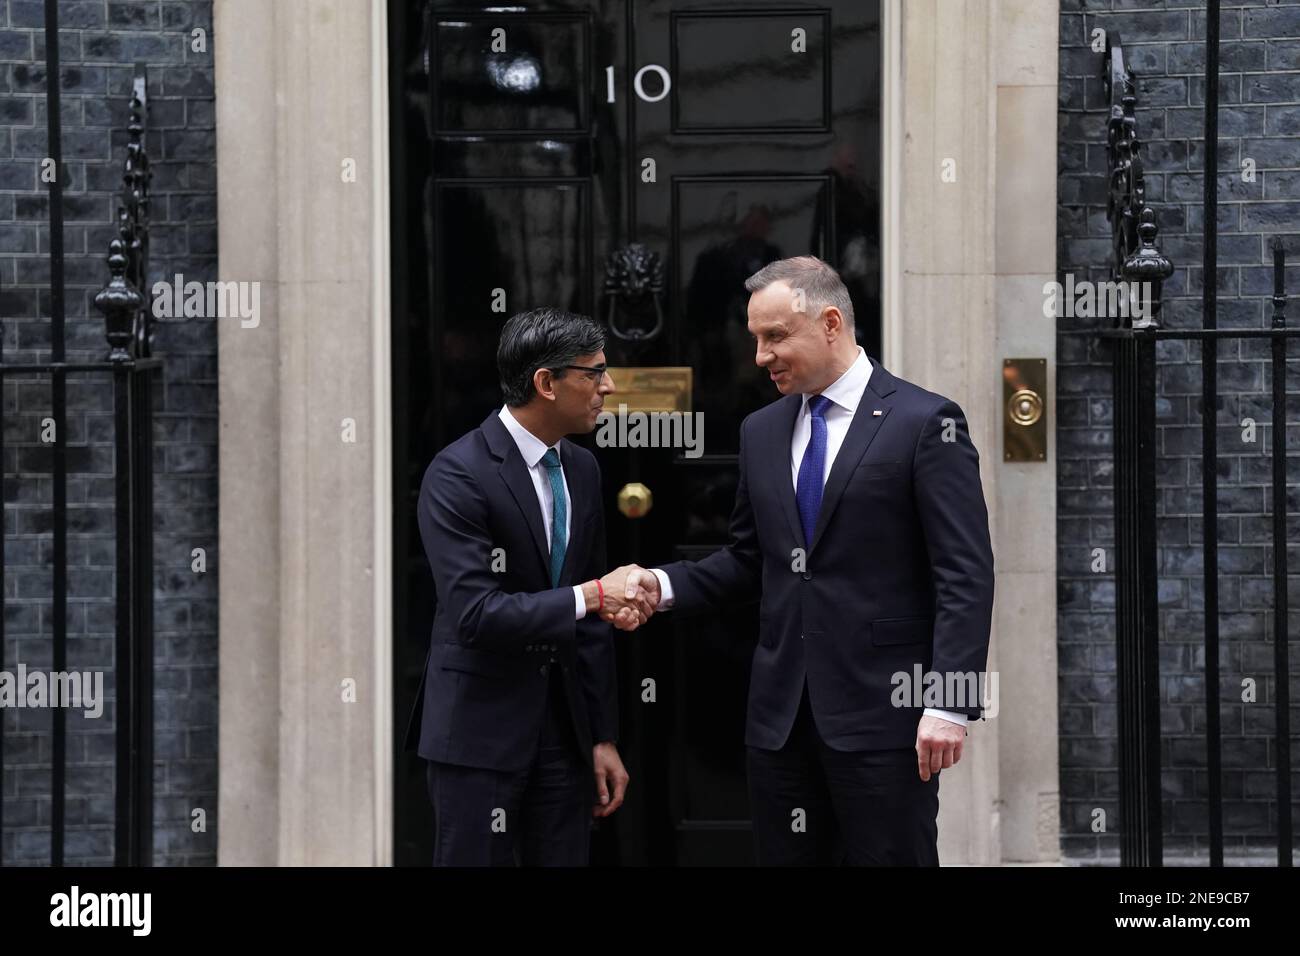 Il primo ministro Rishi Sunak dà il benvenuto al presidente polacco Andrzej Duda, al di fuori del 10 Downing Street, Londra, in vista di un incontro bilaterale. Data immagine: Giovedì 16 febbraio 2023. Foto Stock